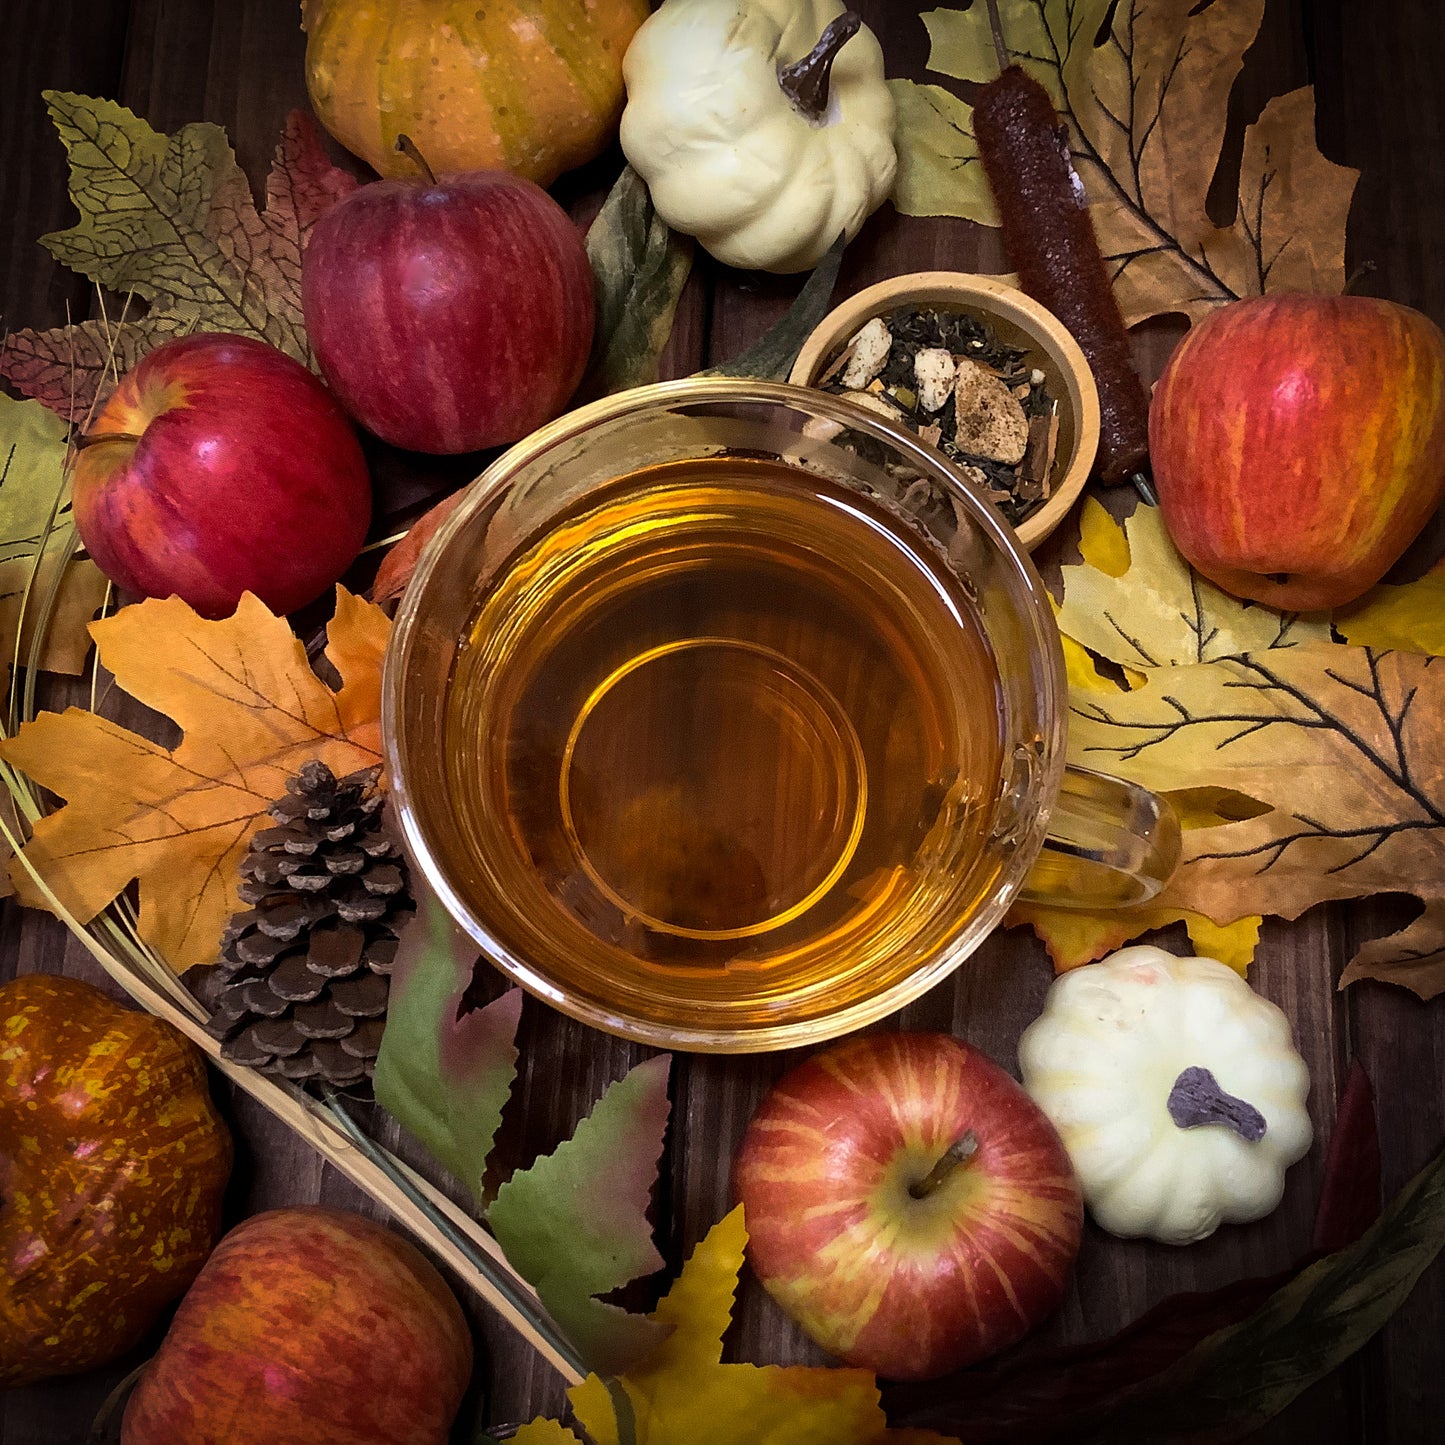 Autumn Apple ~ Apple Spice Fall Season Tea